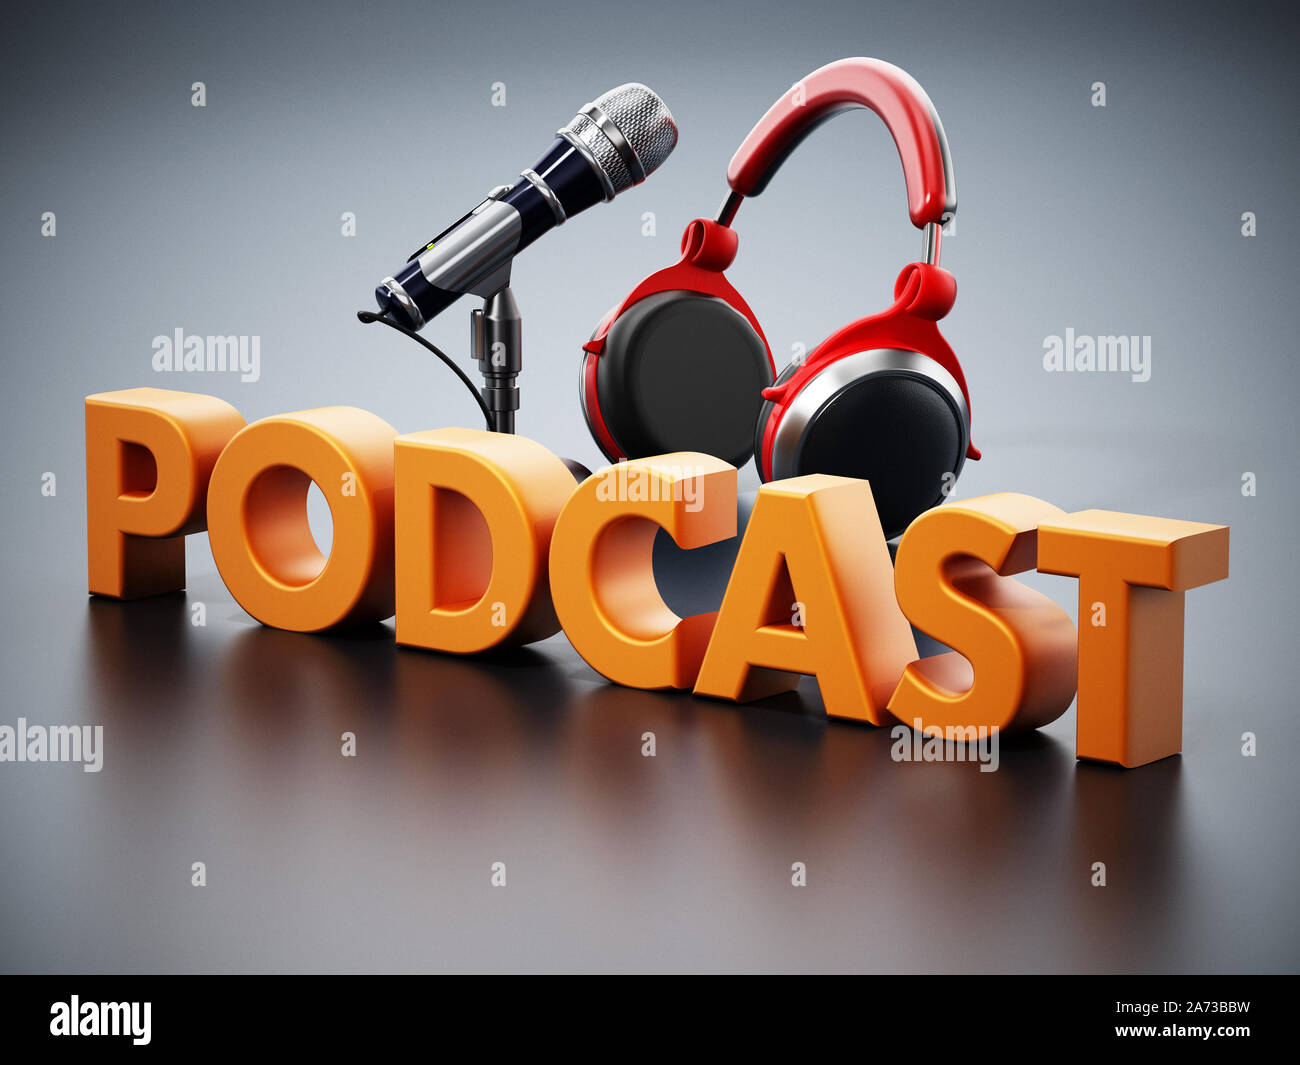 Podcast Wort, Mikrofon und Kopfhörer auf der schwarzen Oberfläche. 3D-Darstellung. Stockfoto